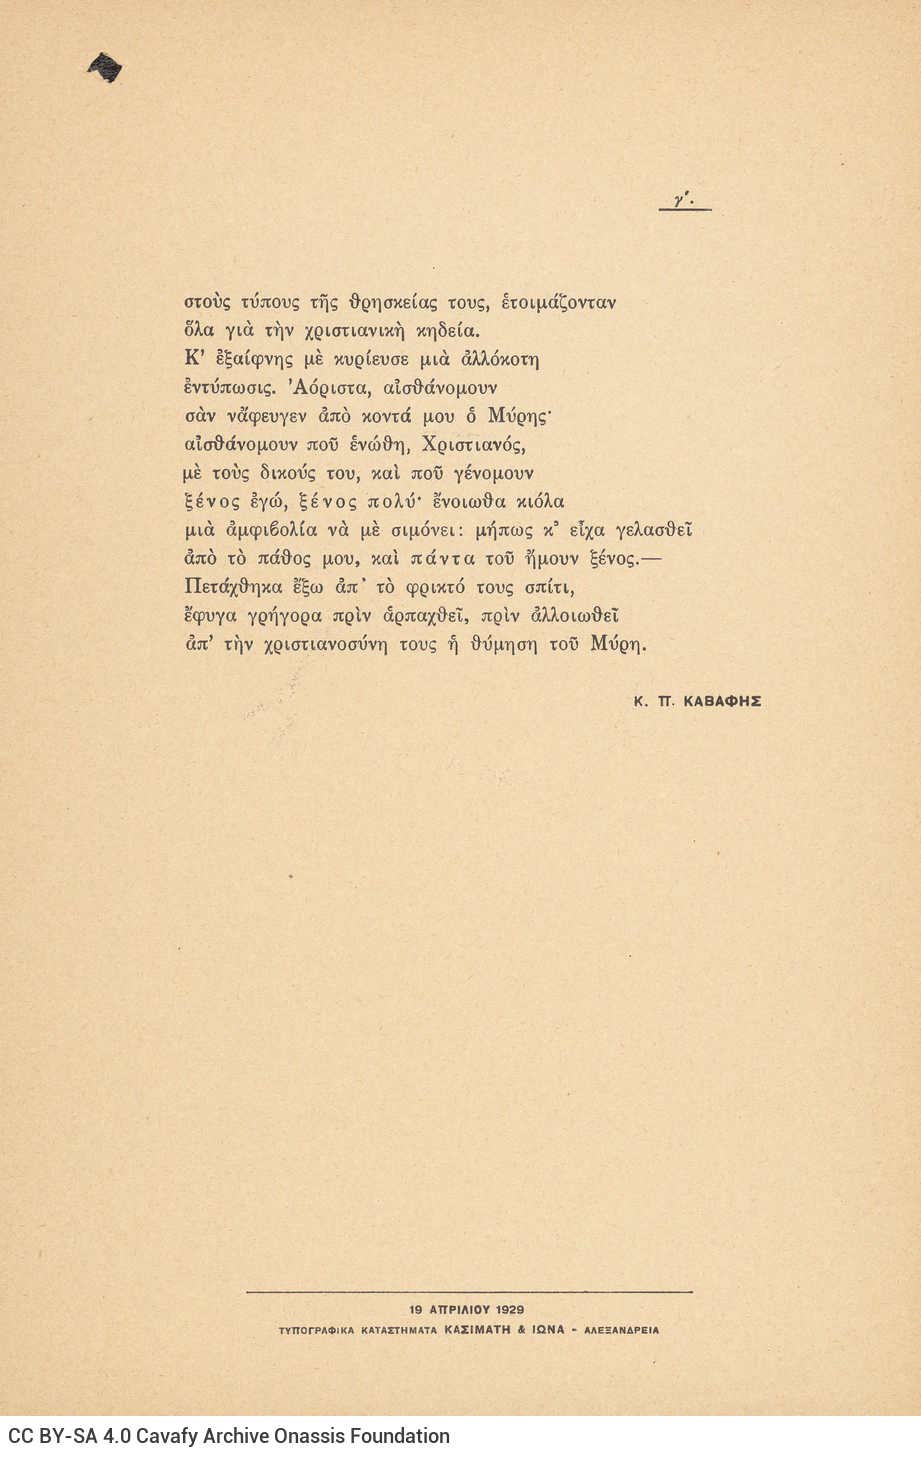 Συλλογή ποιημάτων του Καβάφη (Γ9), αποτελούμενη από 71 έντυπα μονόφυλλ